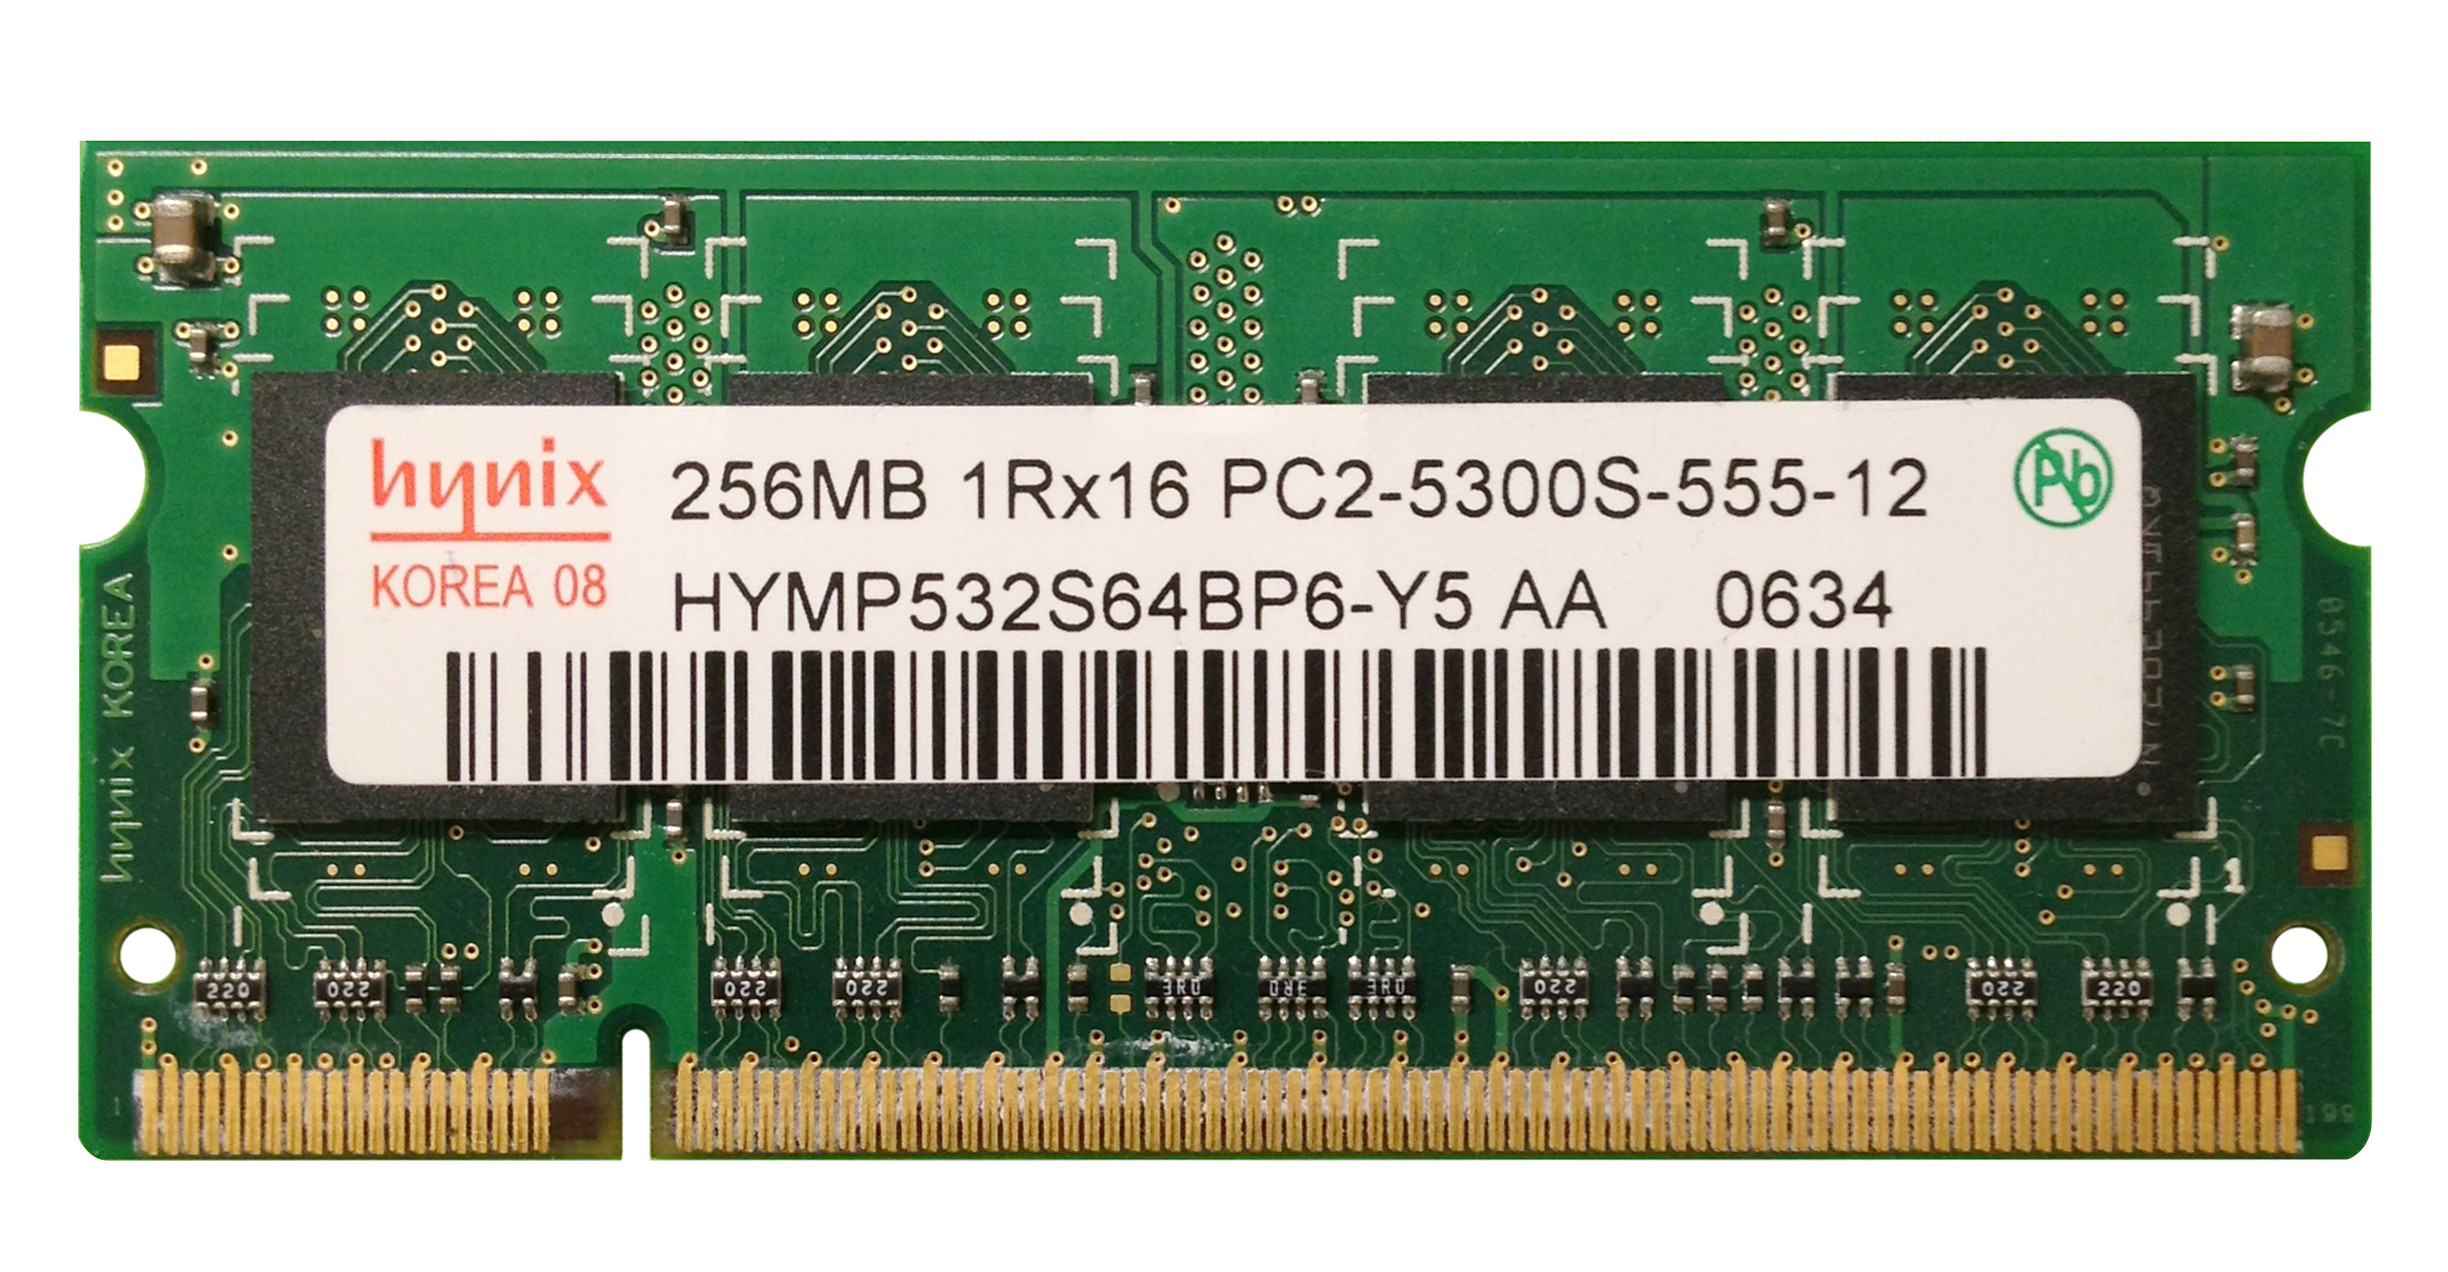 HYMP532S64BP6-Y5 Hynix 256MB PC2-5300 DDR2-667MHz non-ECC Unbuffered CL5 200-Pin SoDimm Single Rank Memory Module